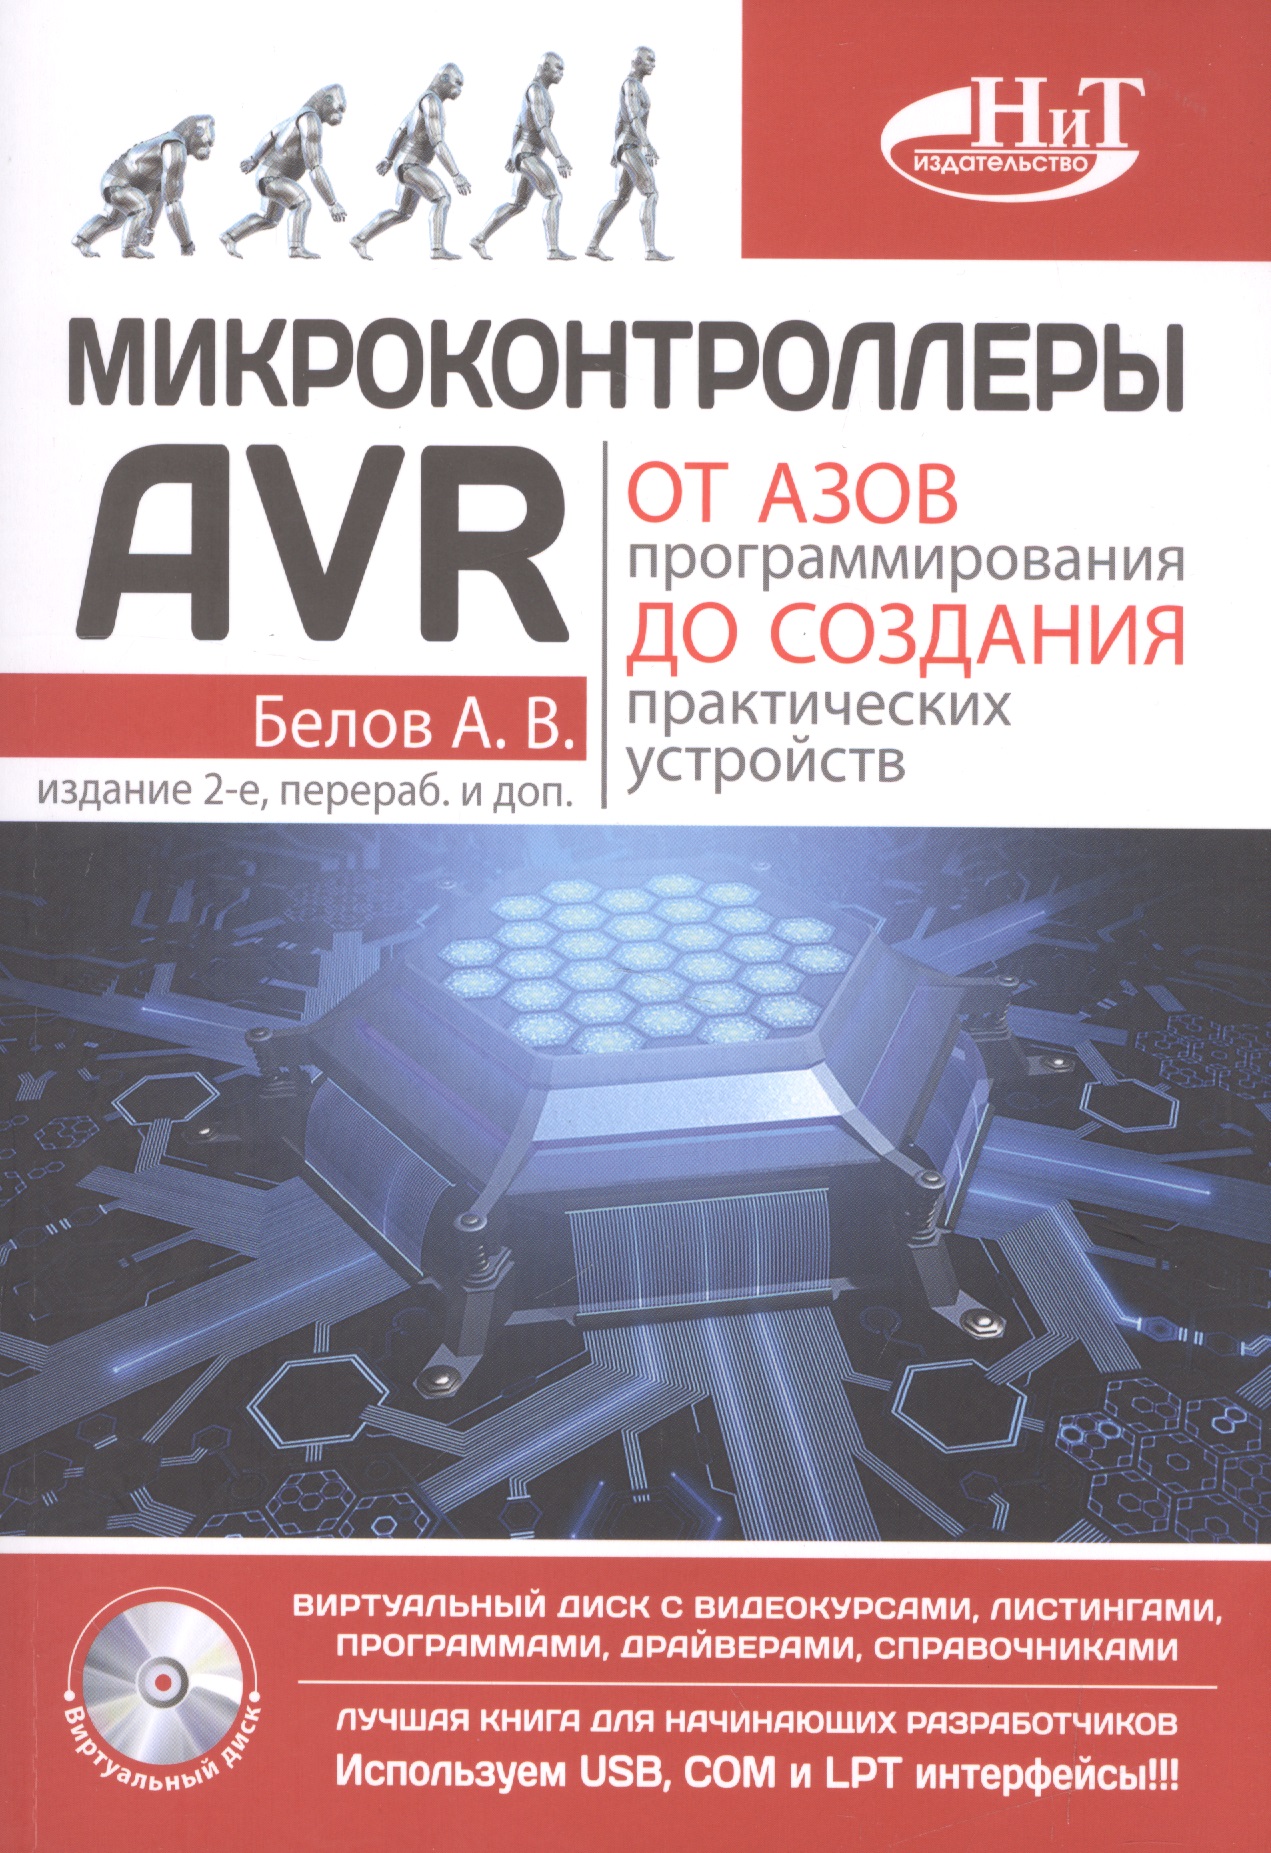 Белов А.Н. - Микроконтроллеры AVR: от азов программирования до создания практических устройств. 2-е изд.+ дискс в